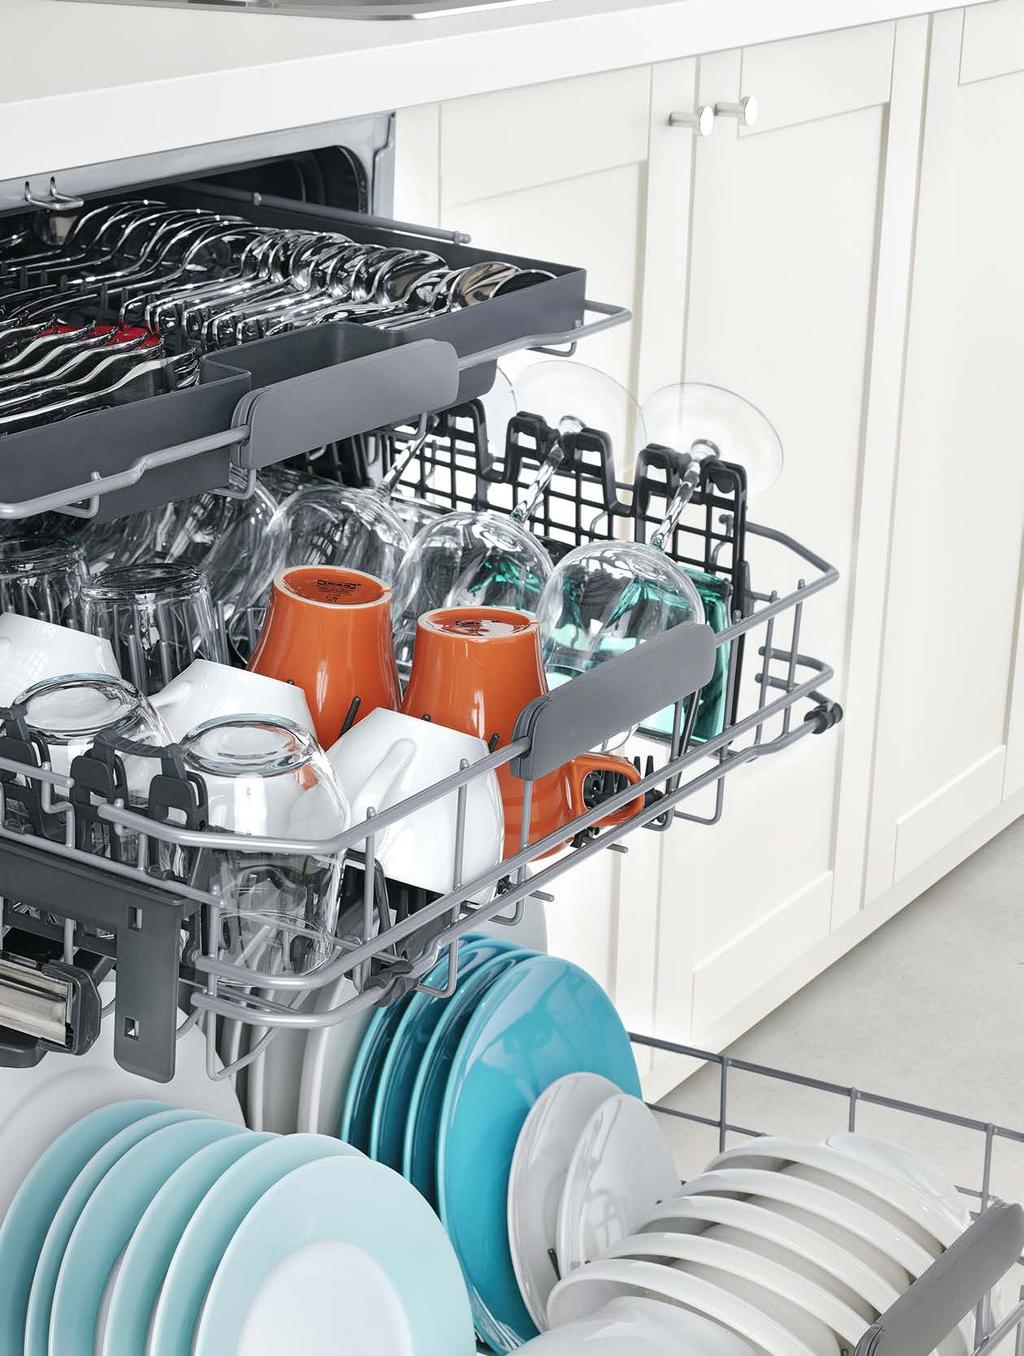 LAVASTOVIGLIE La lavastoviglie permette di consumare meno acqua ed energia rispetto al lavaggio a mano dei piatti ed è più igienica.